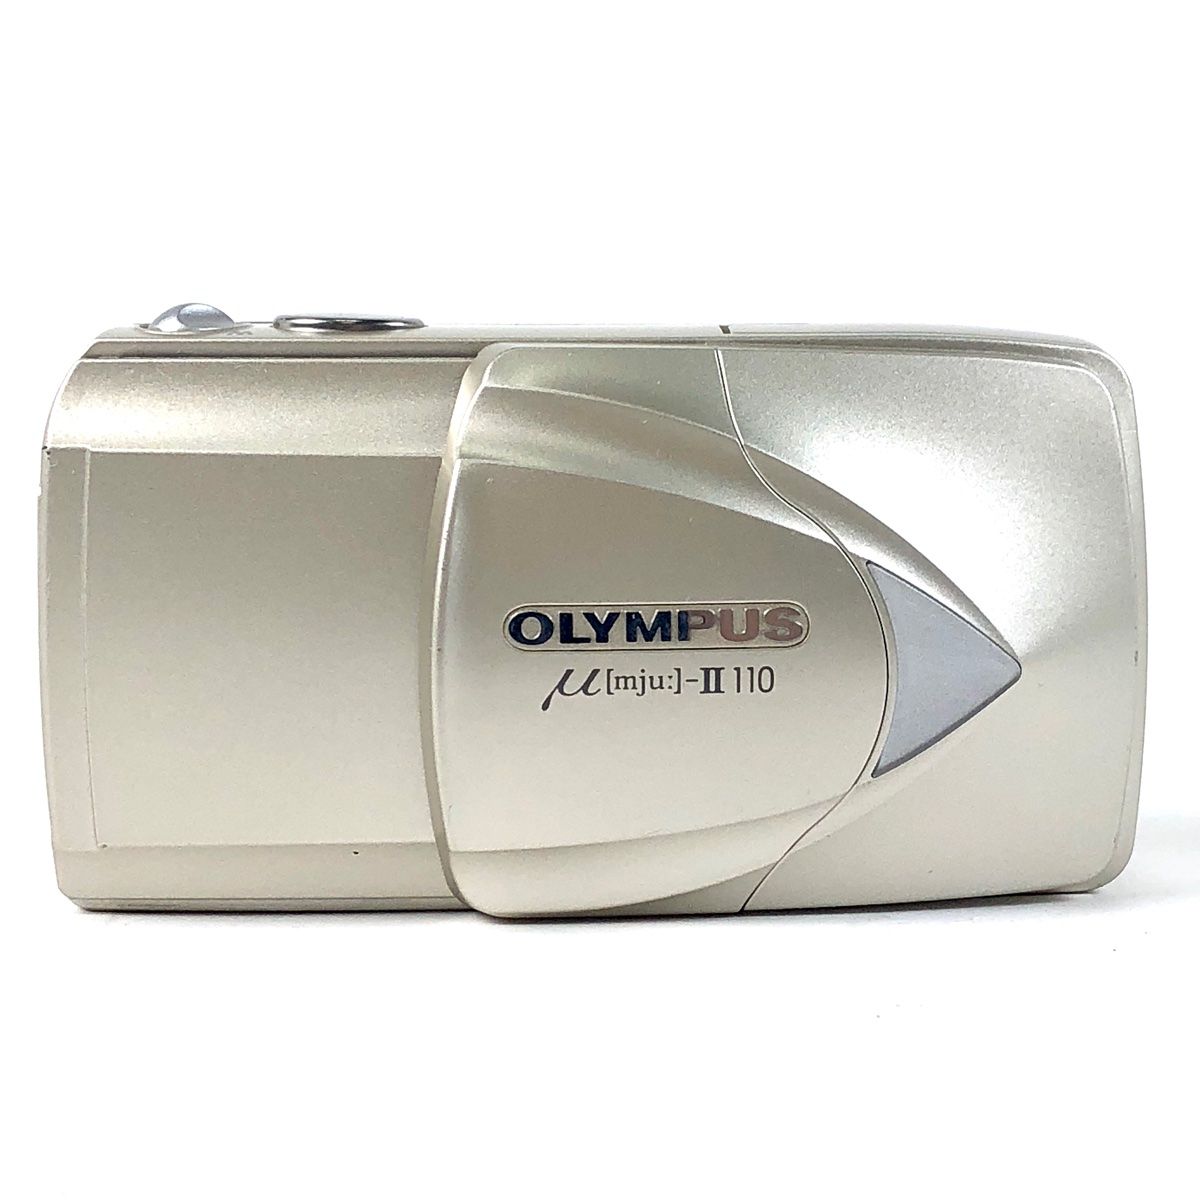 OLYMPUS μ [mju:]-Ⅱ 110 オリンパス ミュー コンパクトフィルムカメラ